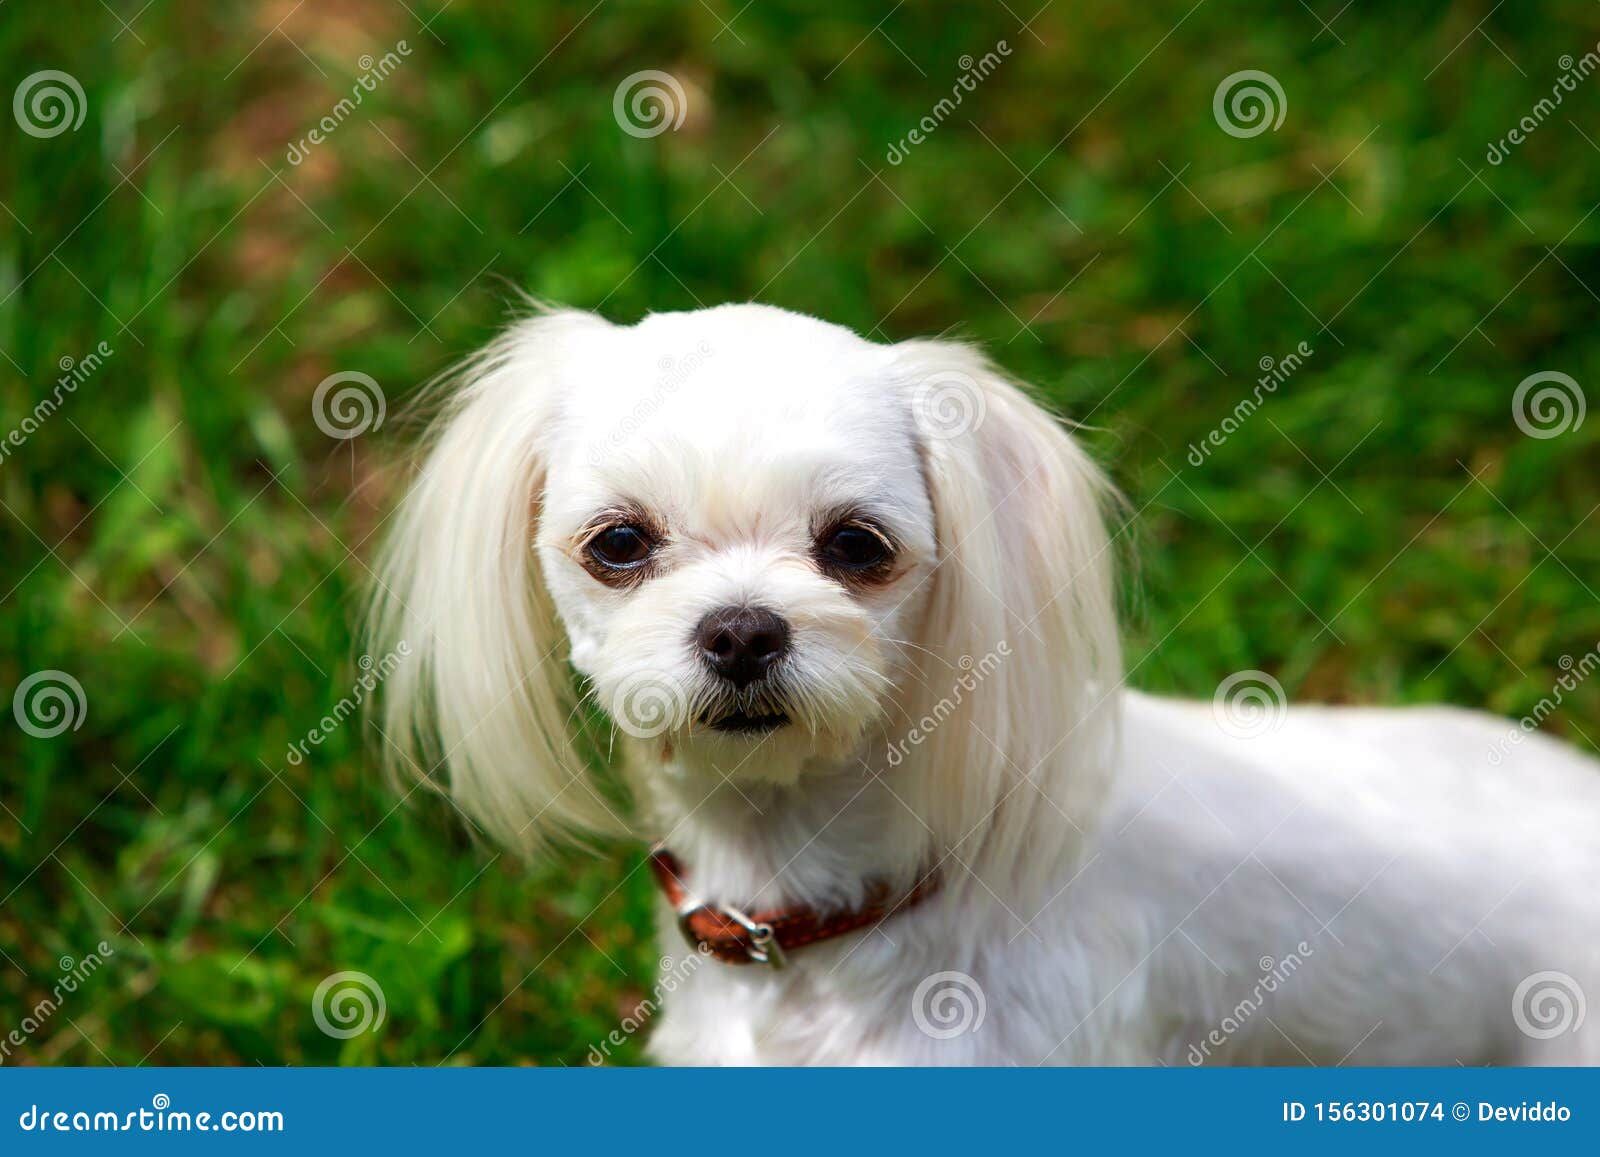 Dog breed Maltese stock photo. Image of lapdog, domestic - 156301074